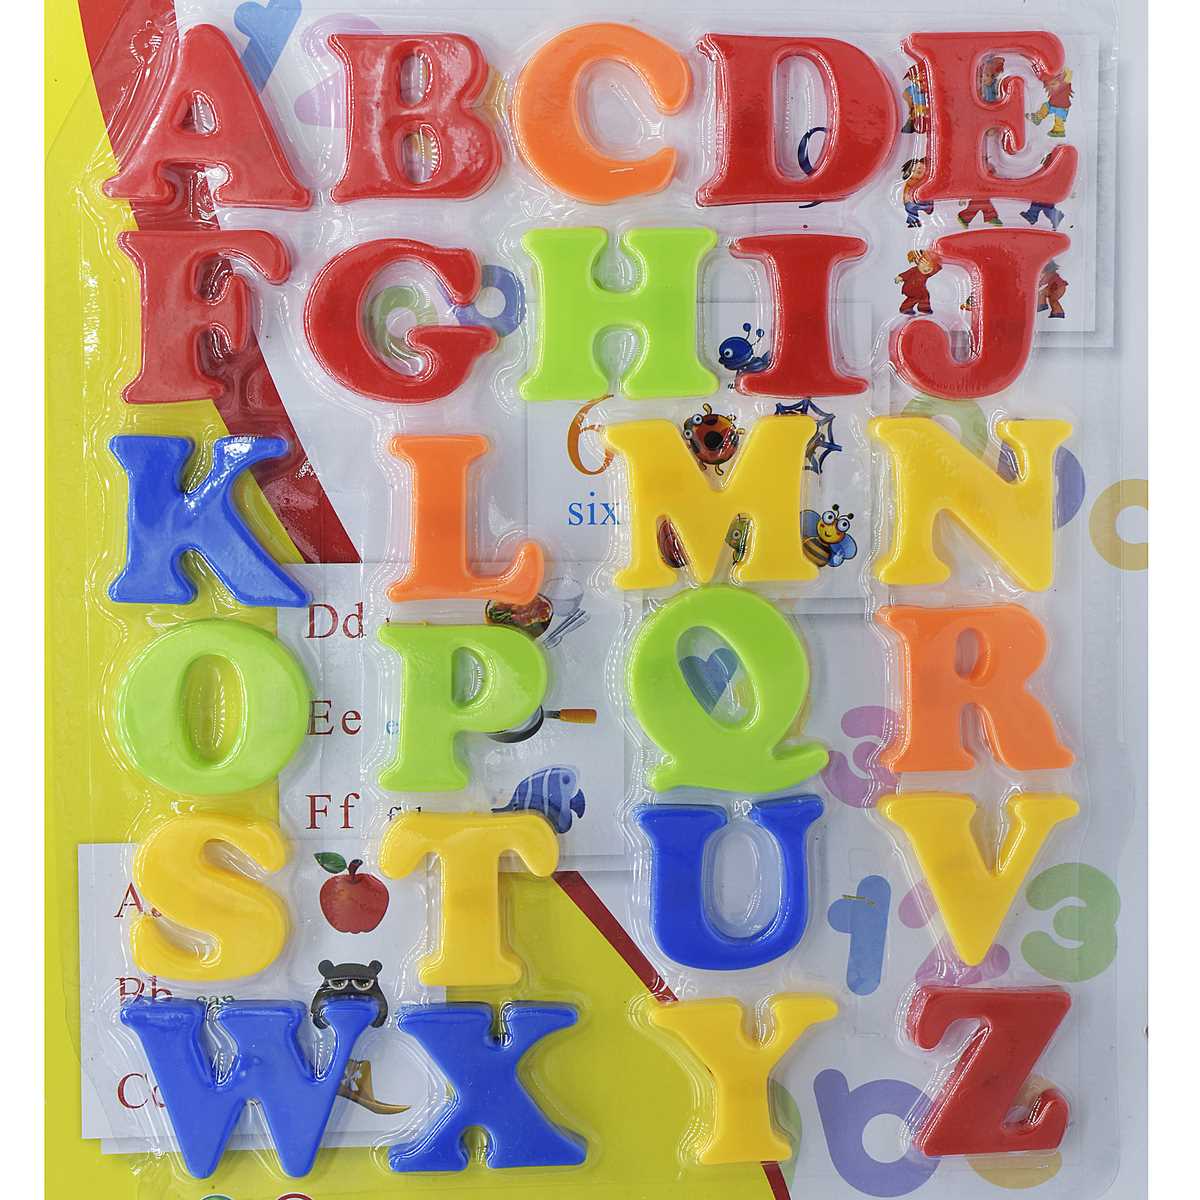 jags-mumbai Toys & Kits Teaching Magnetic 26pcs Uppercase Letters